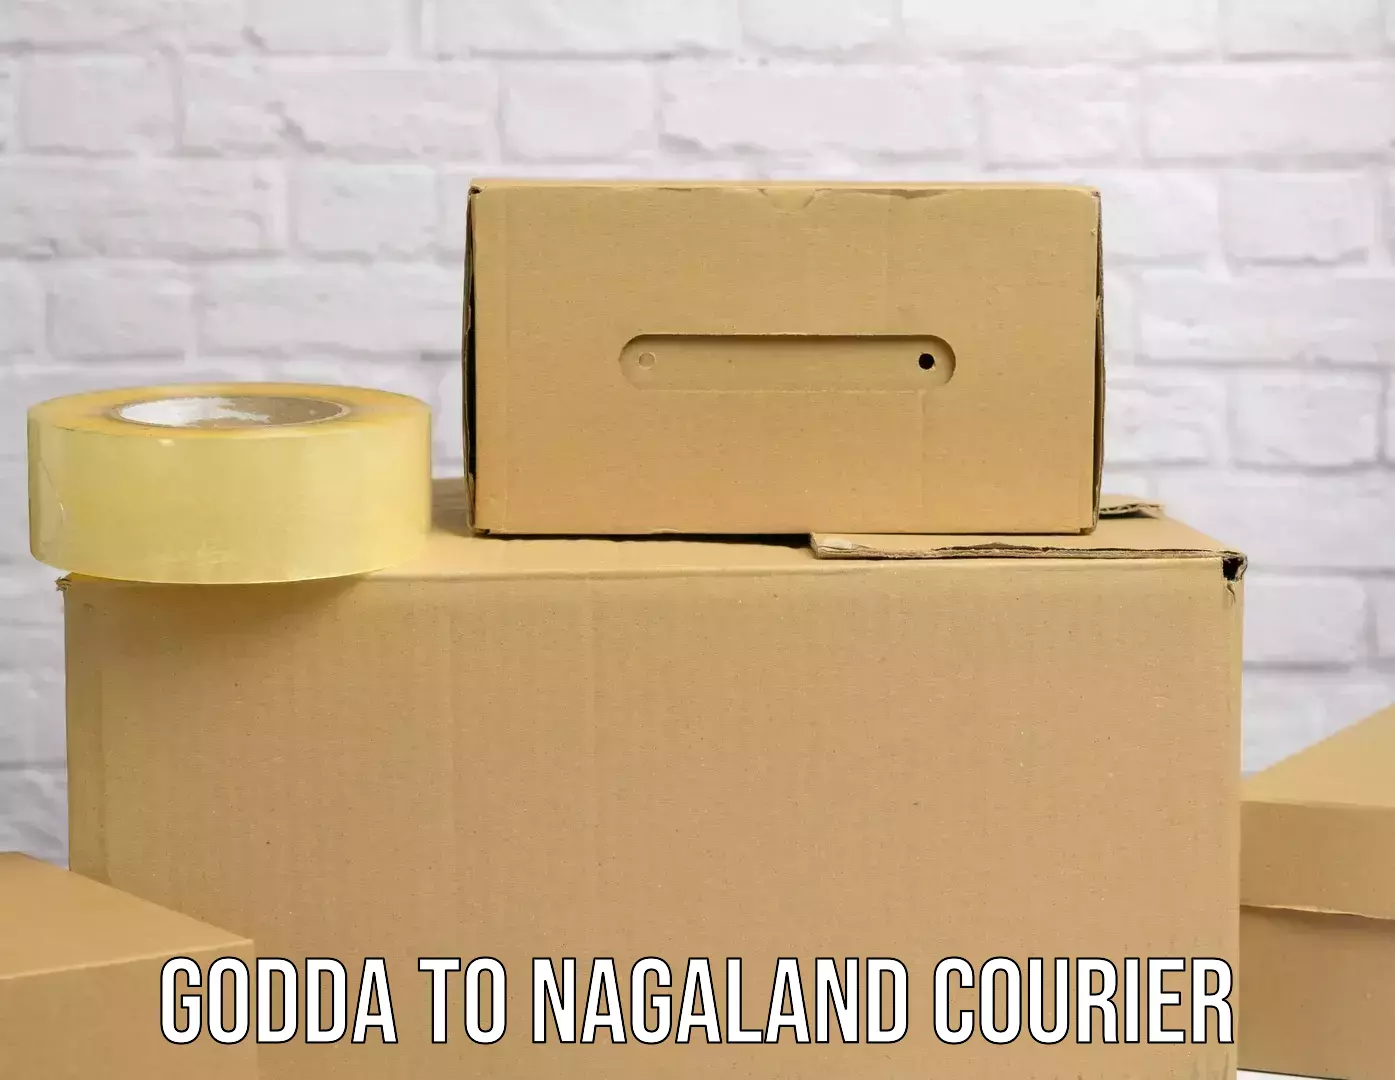 Express package services Godda to NIT Nagaland